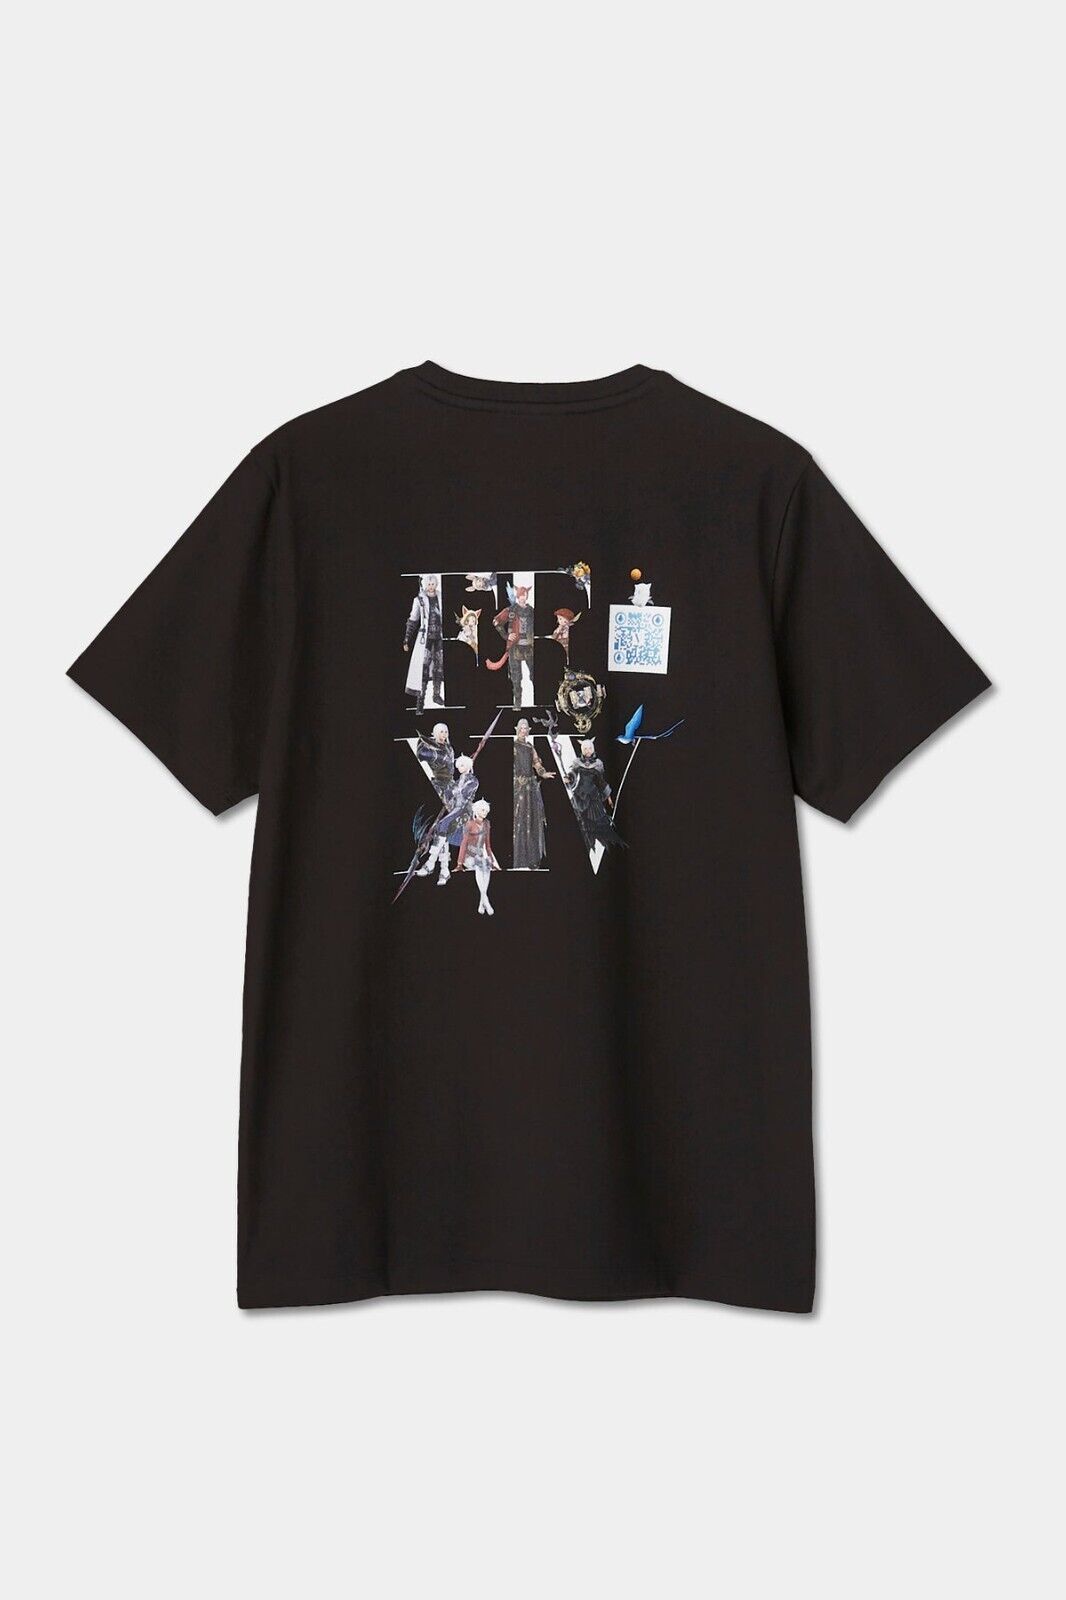 FINAL FANTASY XIV × VOGUE JAPAN limited T-SHIRT, size S M L Black Cotton 100%